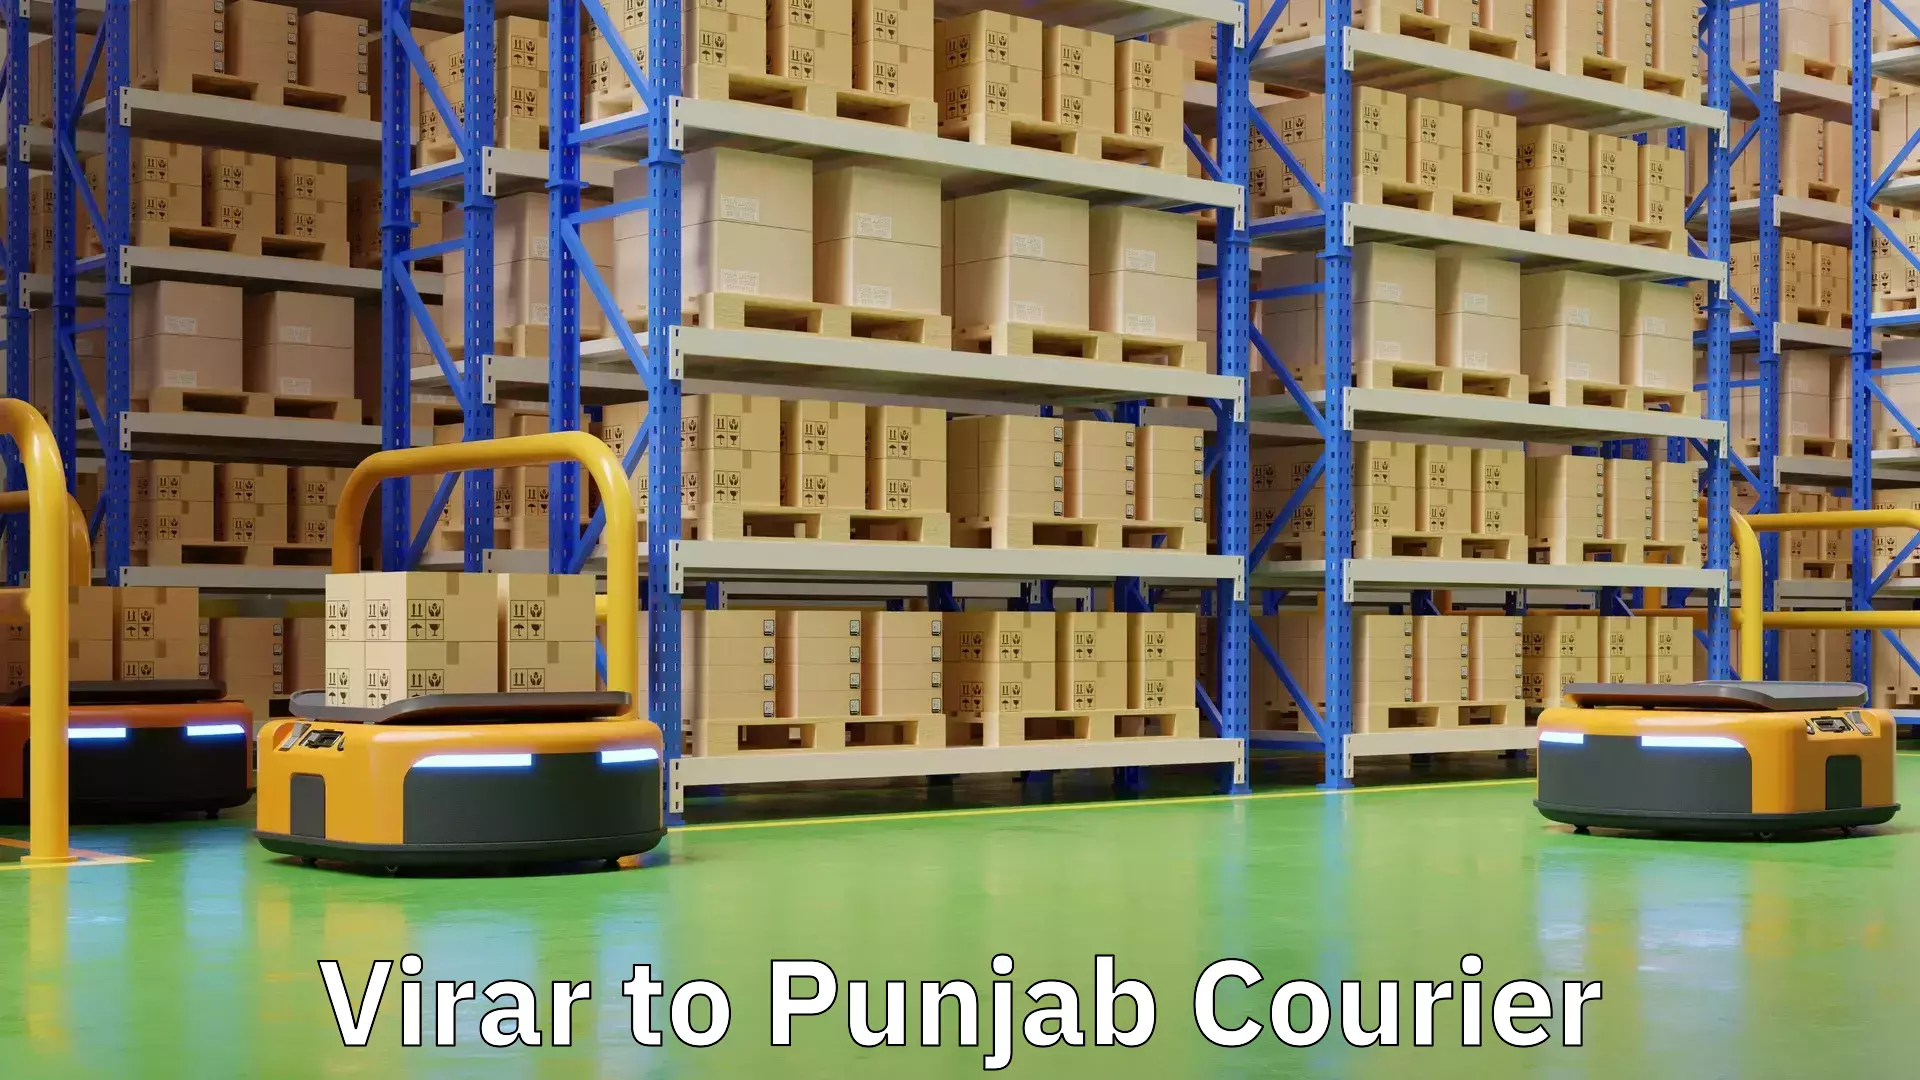 Professional courier handling Virar to Punjab